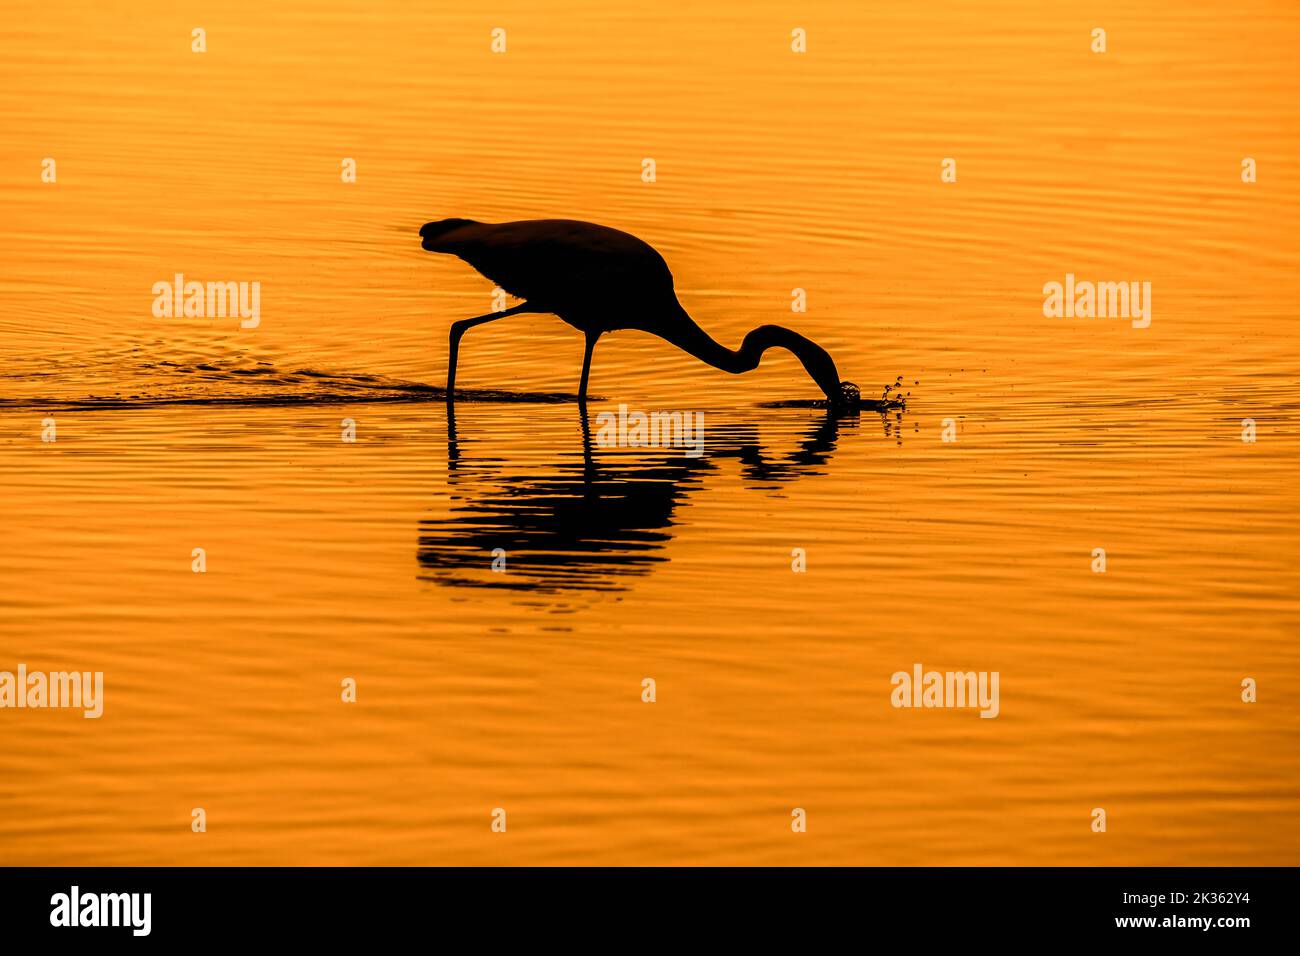 Silberreiher / Reiher (Ardea alba / Egretta alba) stechender Fisch im seichten Wasser des Teiches, bei Sonnenuntergang silhouettiert Stockfoto